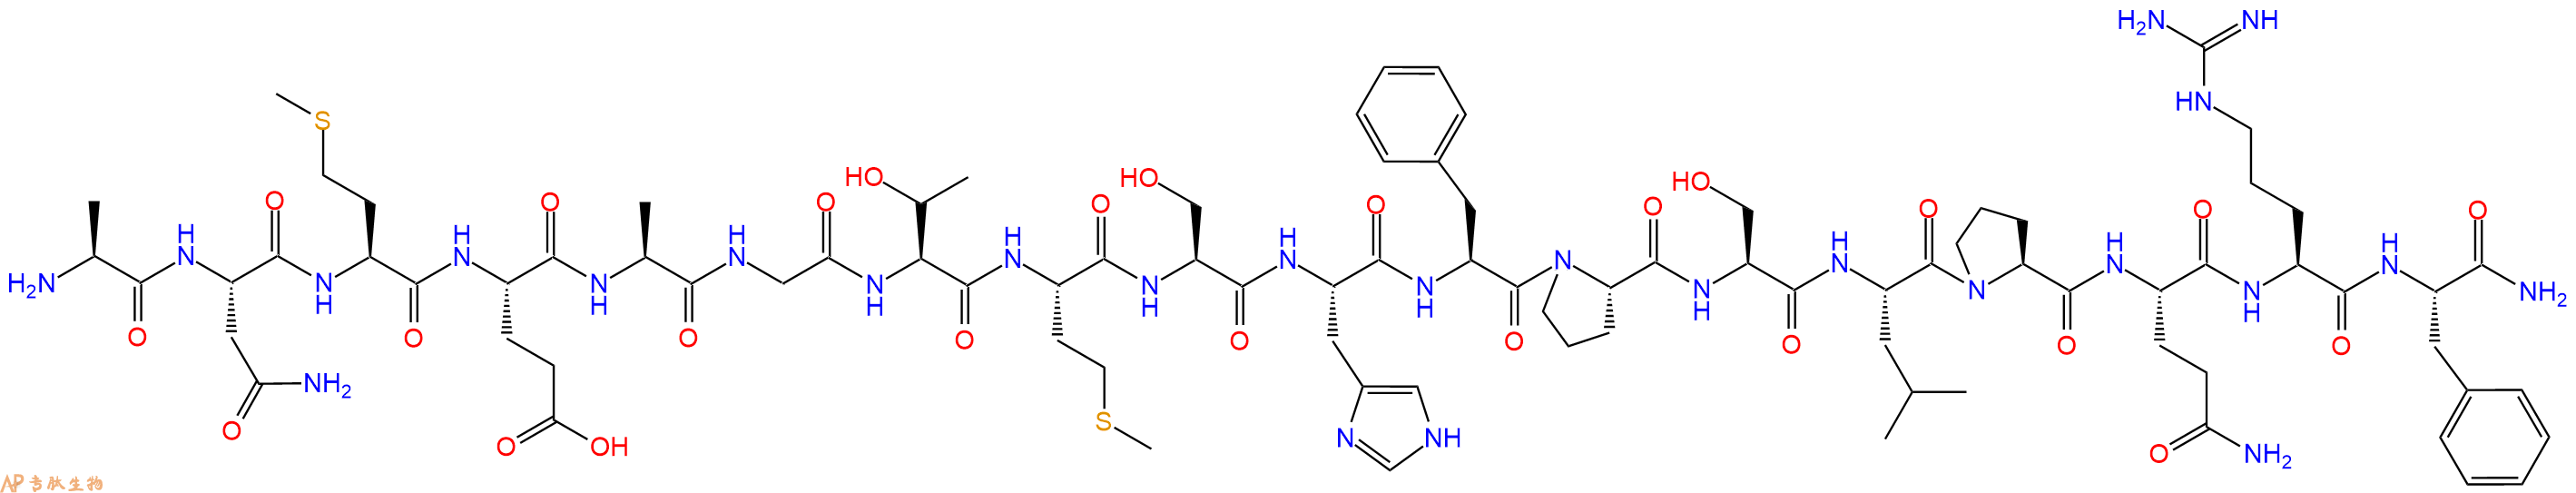 专肽生物产品RFRP-2 (rat)420088-80-8